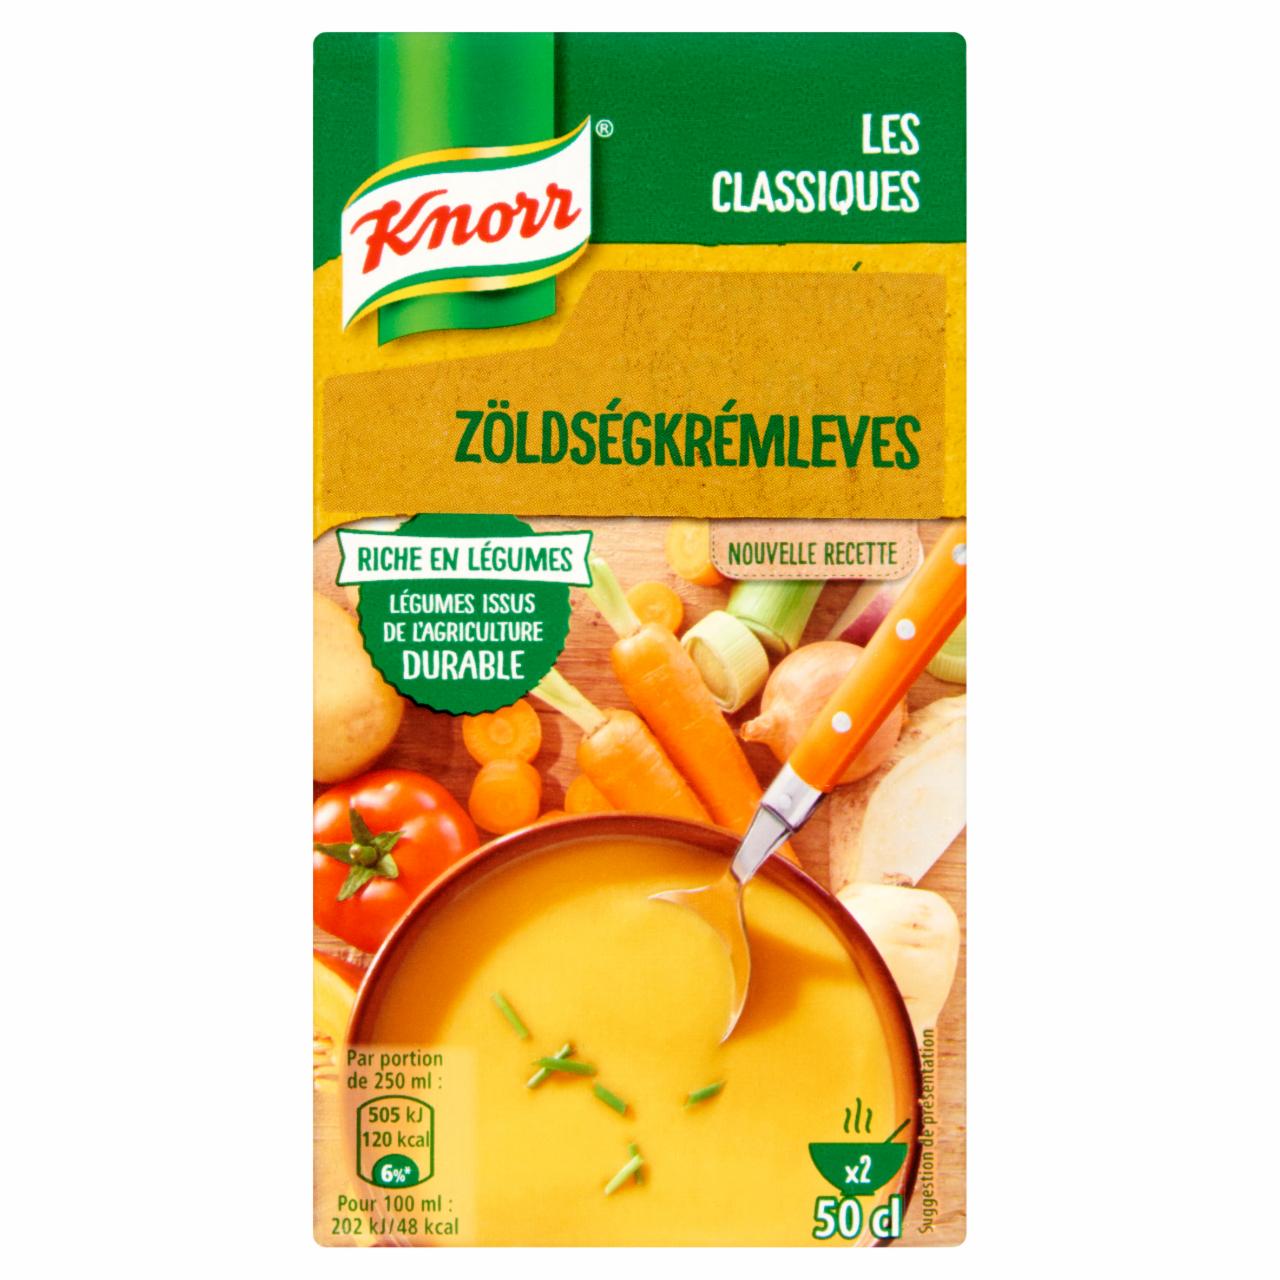 Képek - Knorr zöldségkrémleves 500 ml